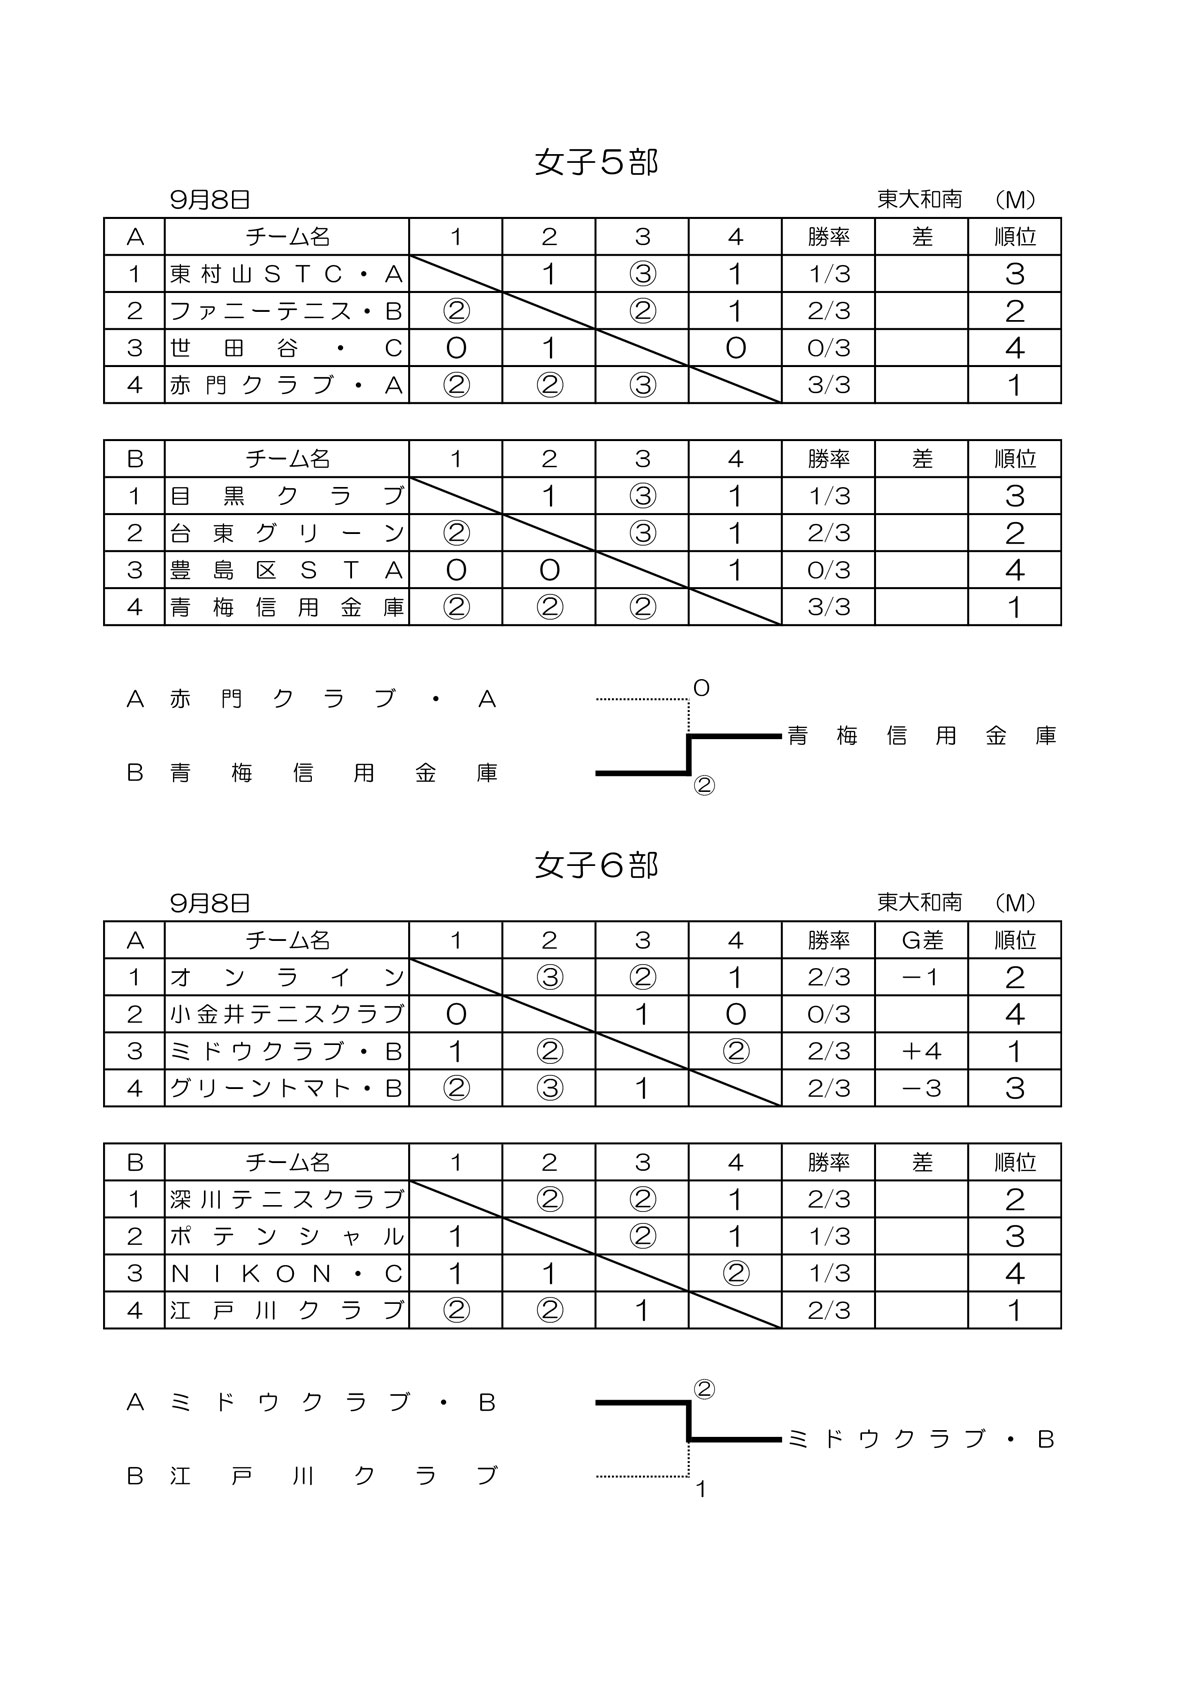 令和元年度 秋季クラブ戦結果 東京都ソフトテニス連盟